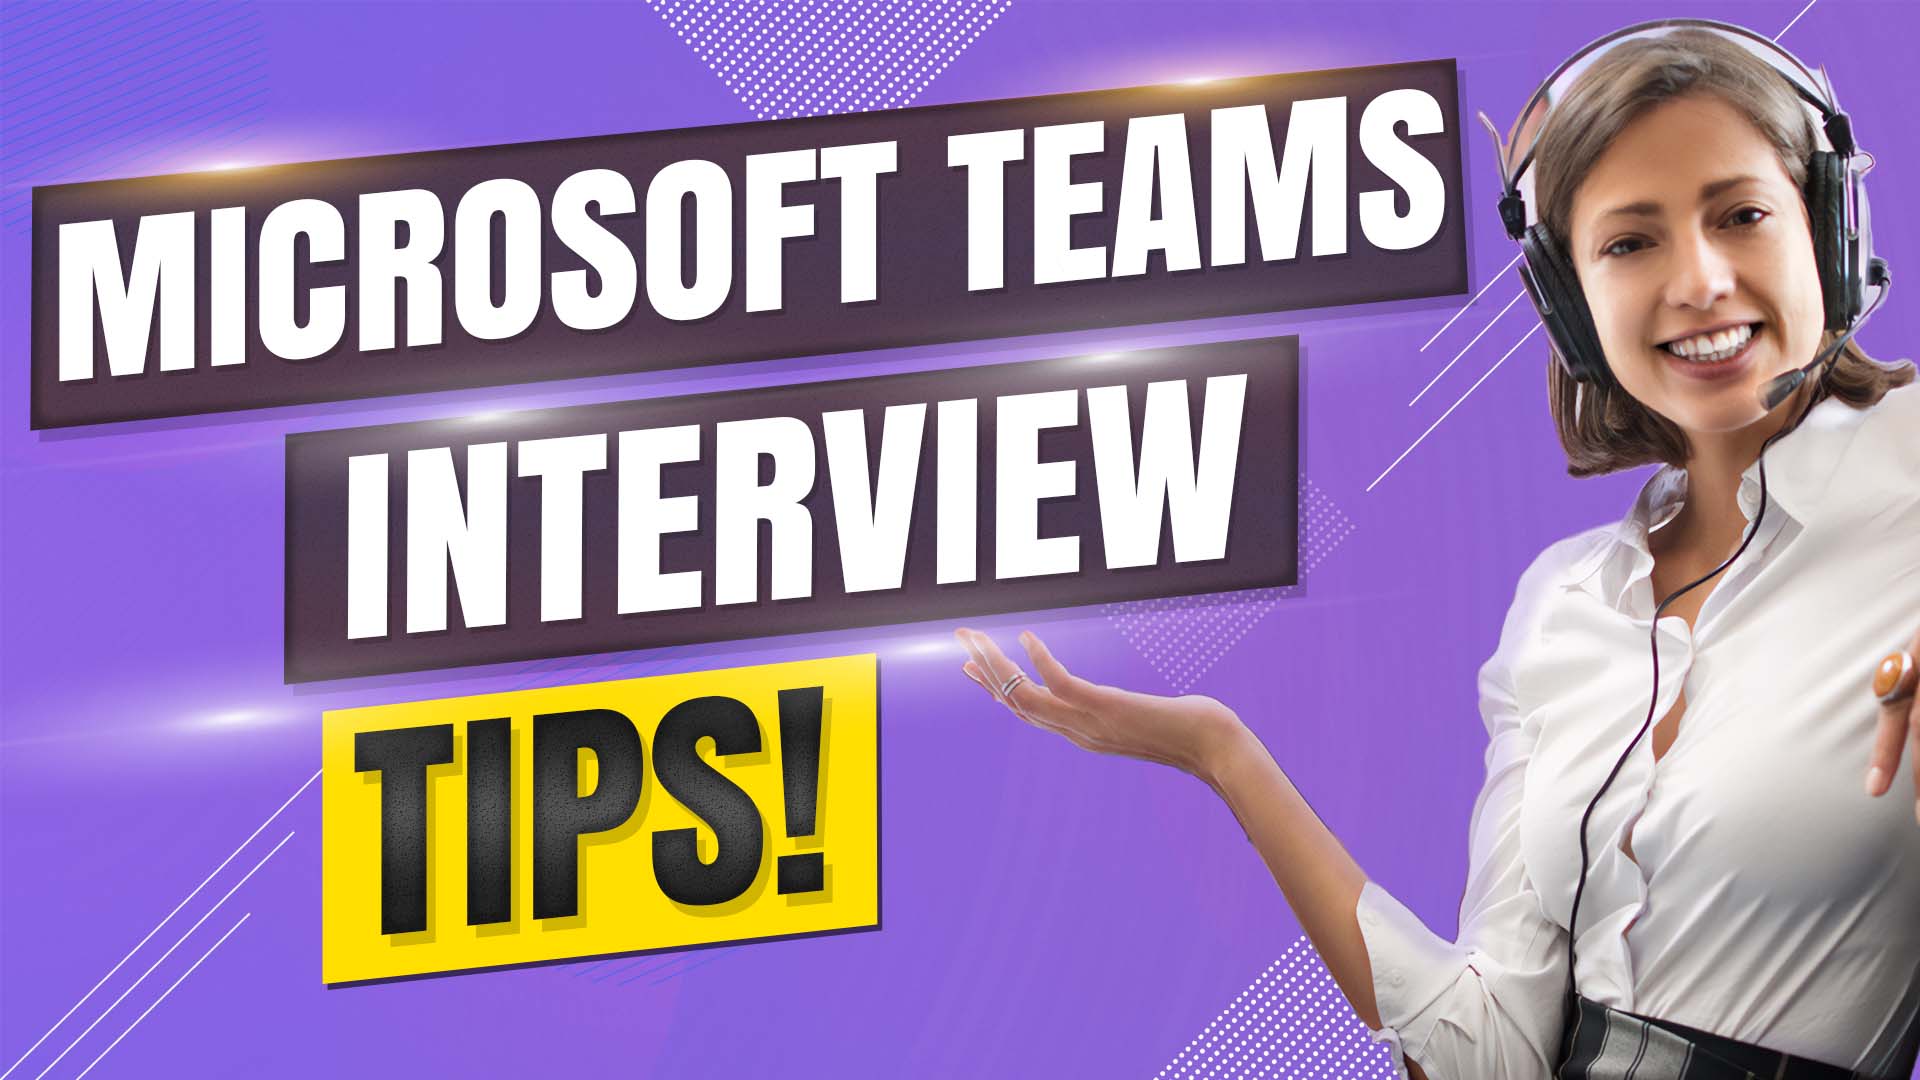 Microsoft Teams - ứng dụng hỗ trợ tổ chức họp trực tuyến và làm việc nhóm hiệu quả. Với Microsoft Teams, bạn có thể nhanh chóng trao đổi, bàn bạc công việc và thư giãn sau giờ làm. Đón xem hình ảnh liên quan để khám phá ưu điểm của Microsoft Teams.